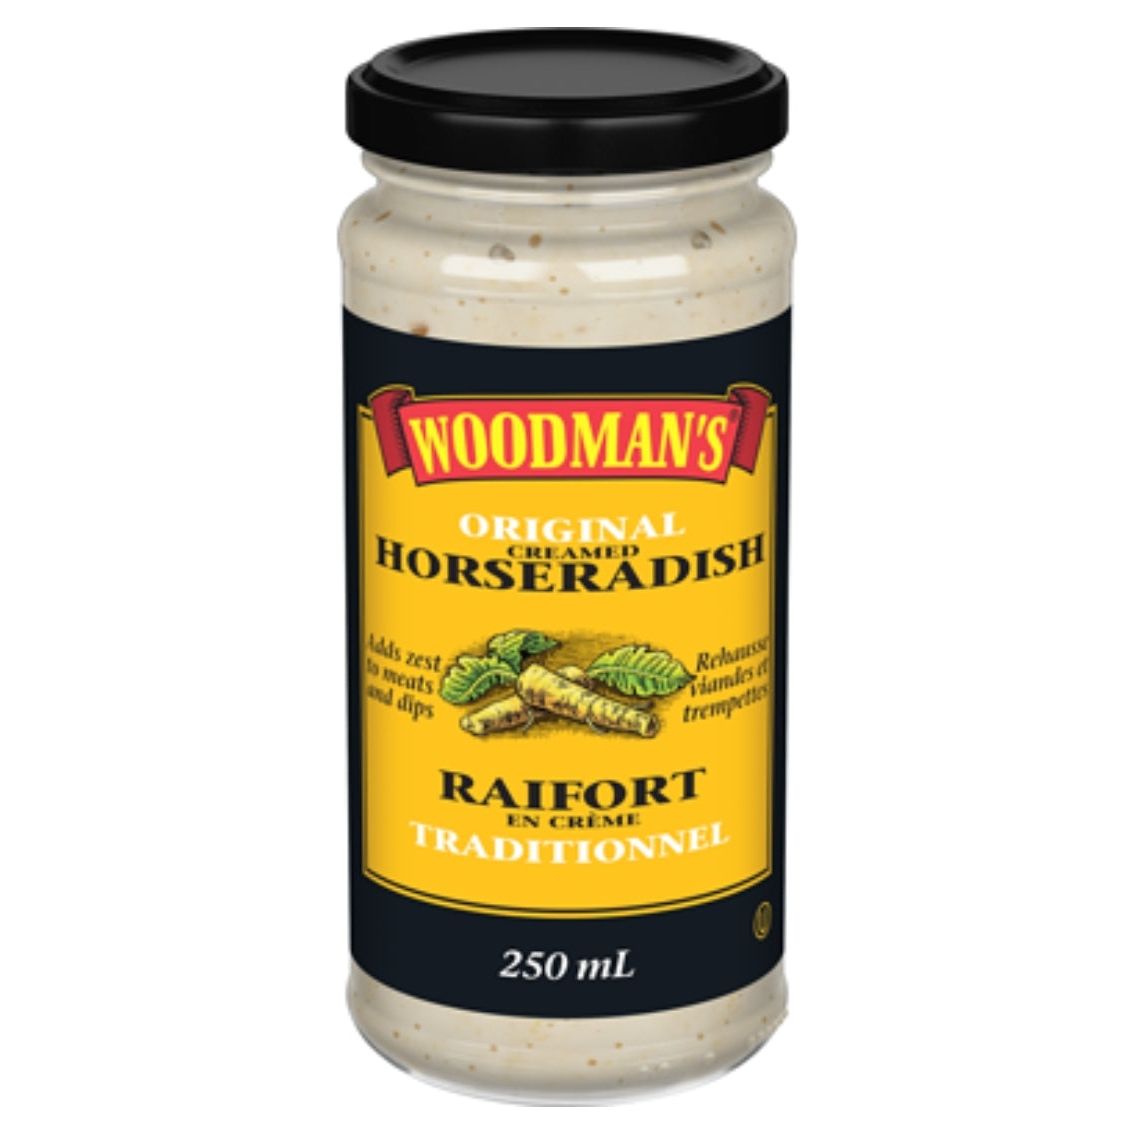 Woodman's Regular Horseradish 250 ml